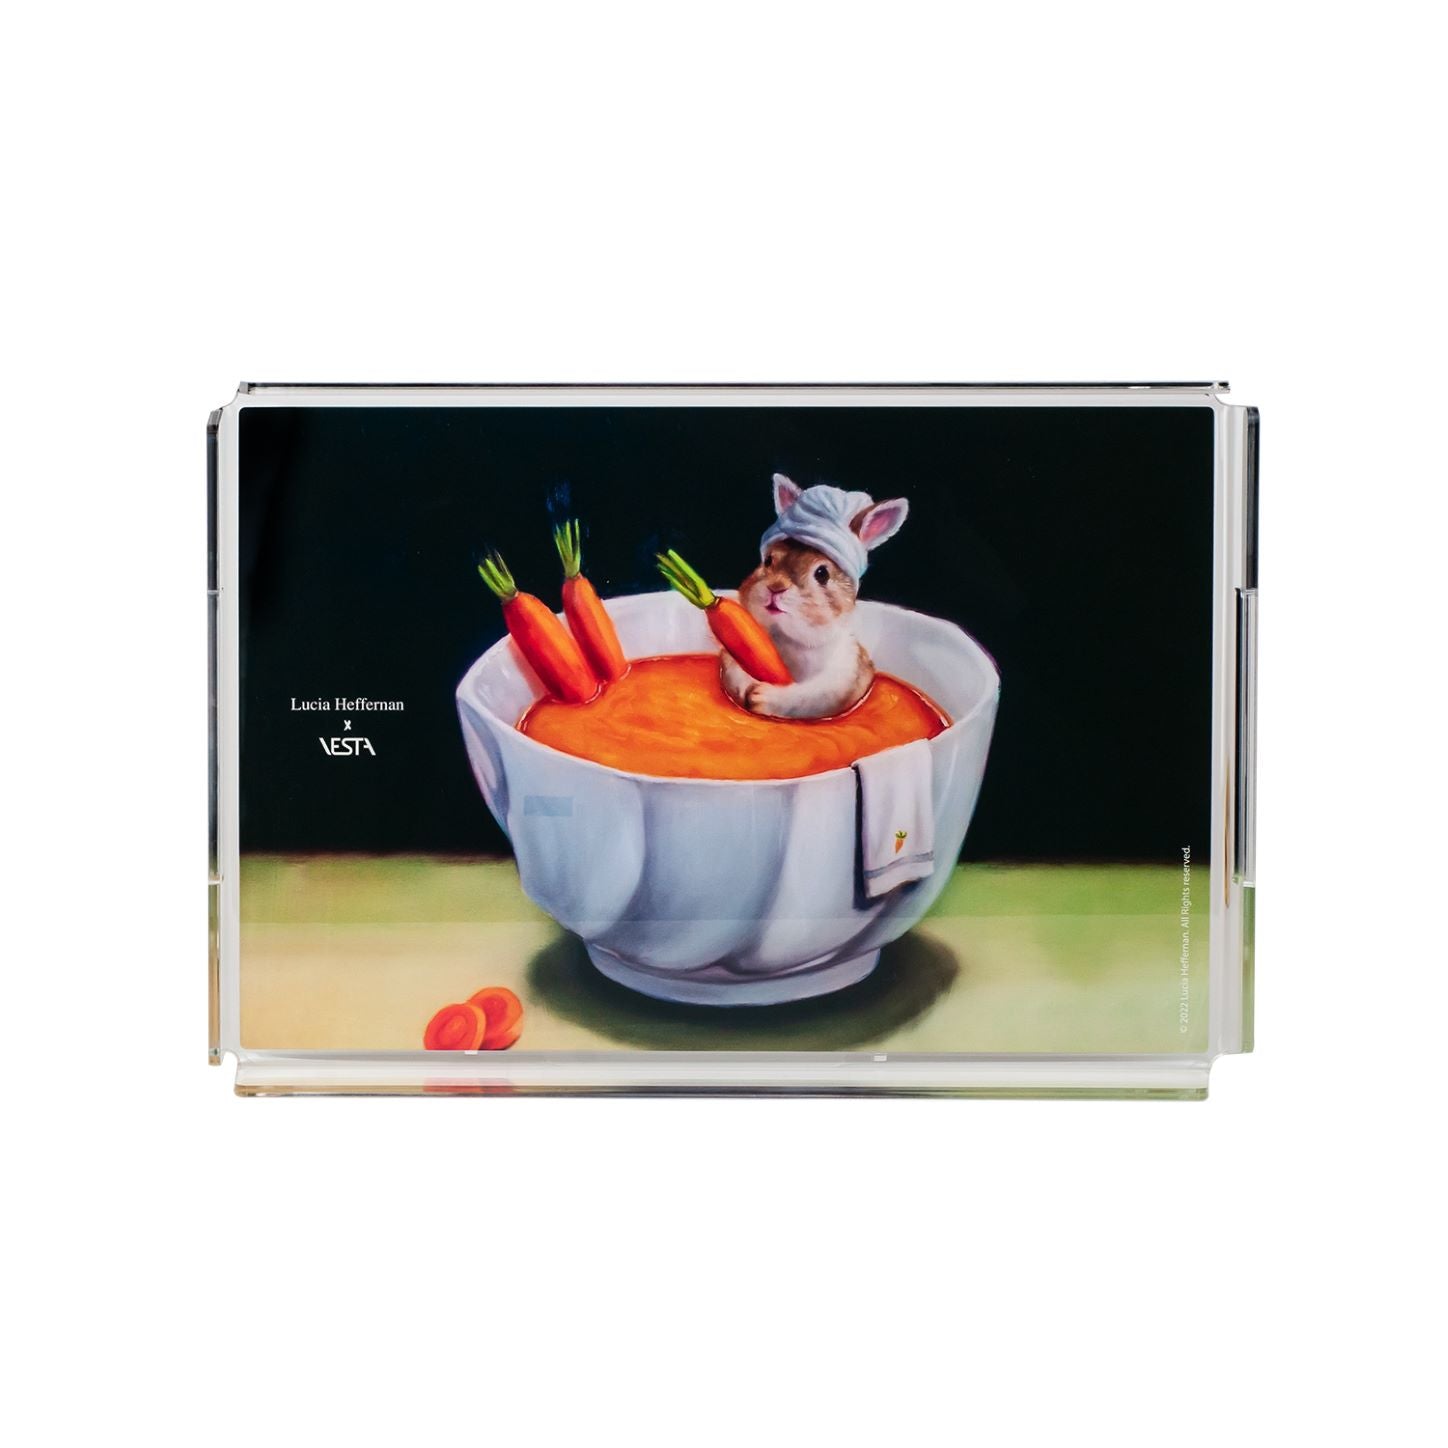 Vassoio in cristallo acrilico con decorazione retrospampata " Carrot Spa" Dimensioni: cm 32 x 22 x 3,5 h, spessore 5 mm. In negozio e online su tuttochic.it